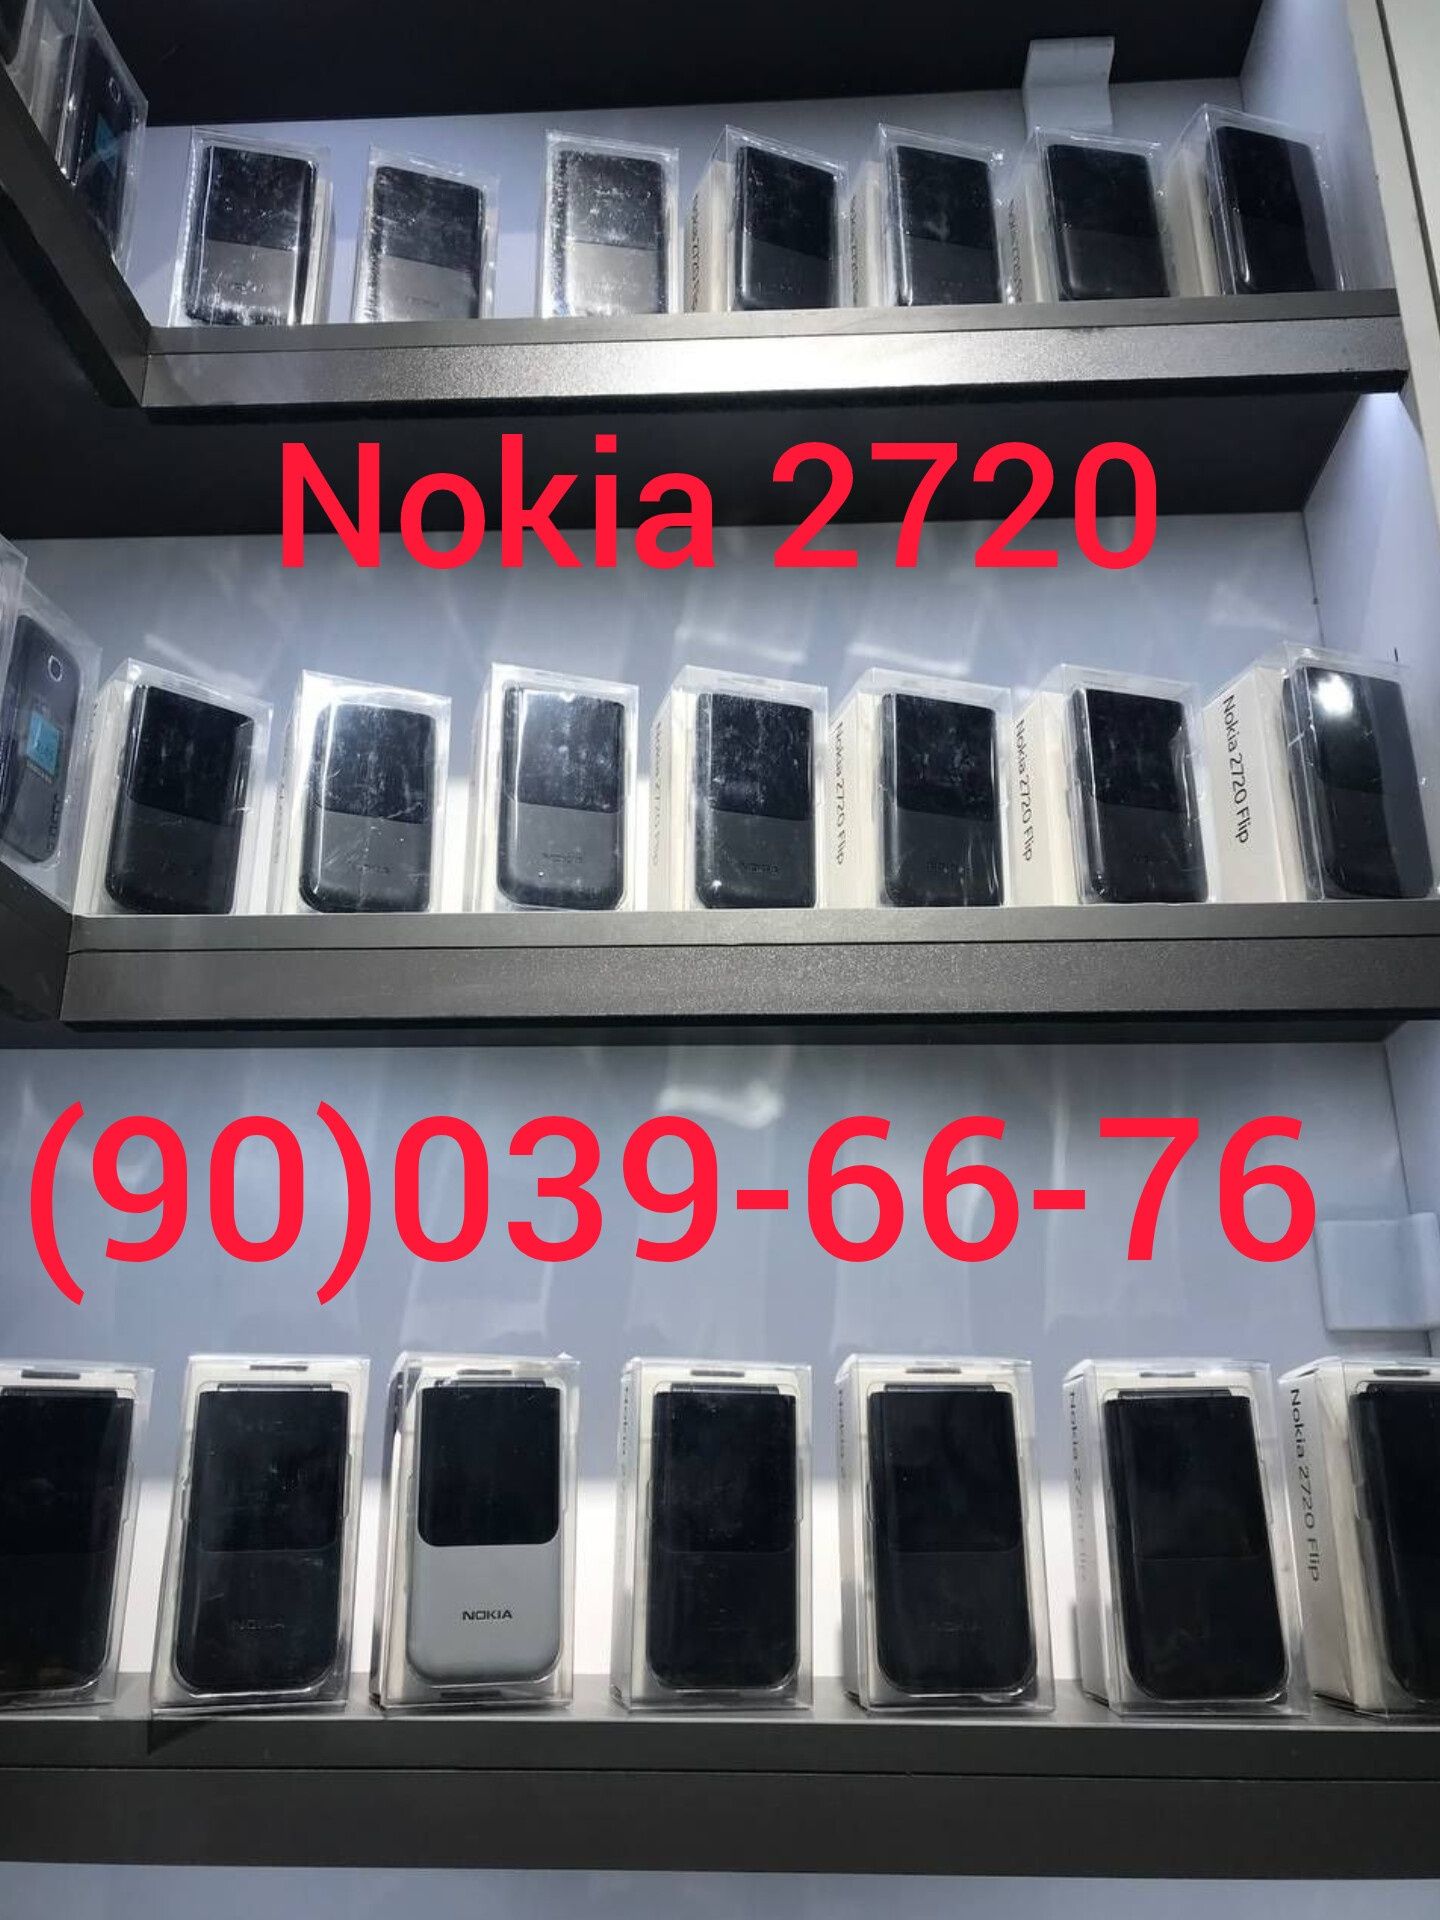 Gusto 3 (B311V) Samsung, Nokia 2660 flip, Nokia 2720 flip, Gsm, YENGI.